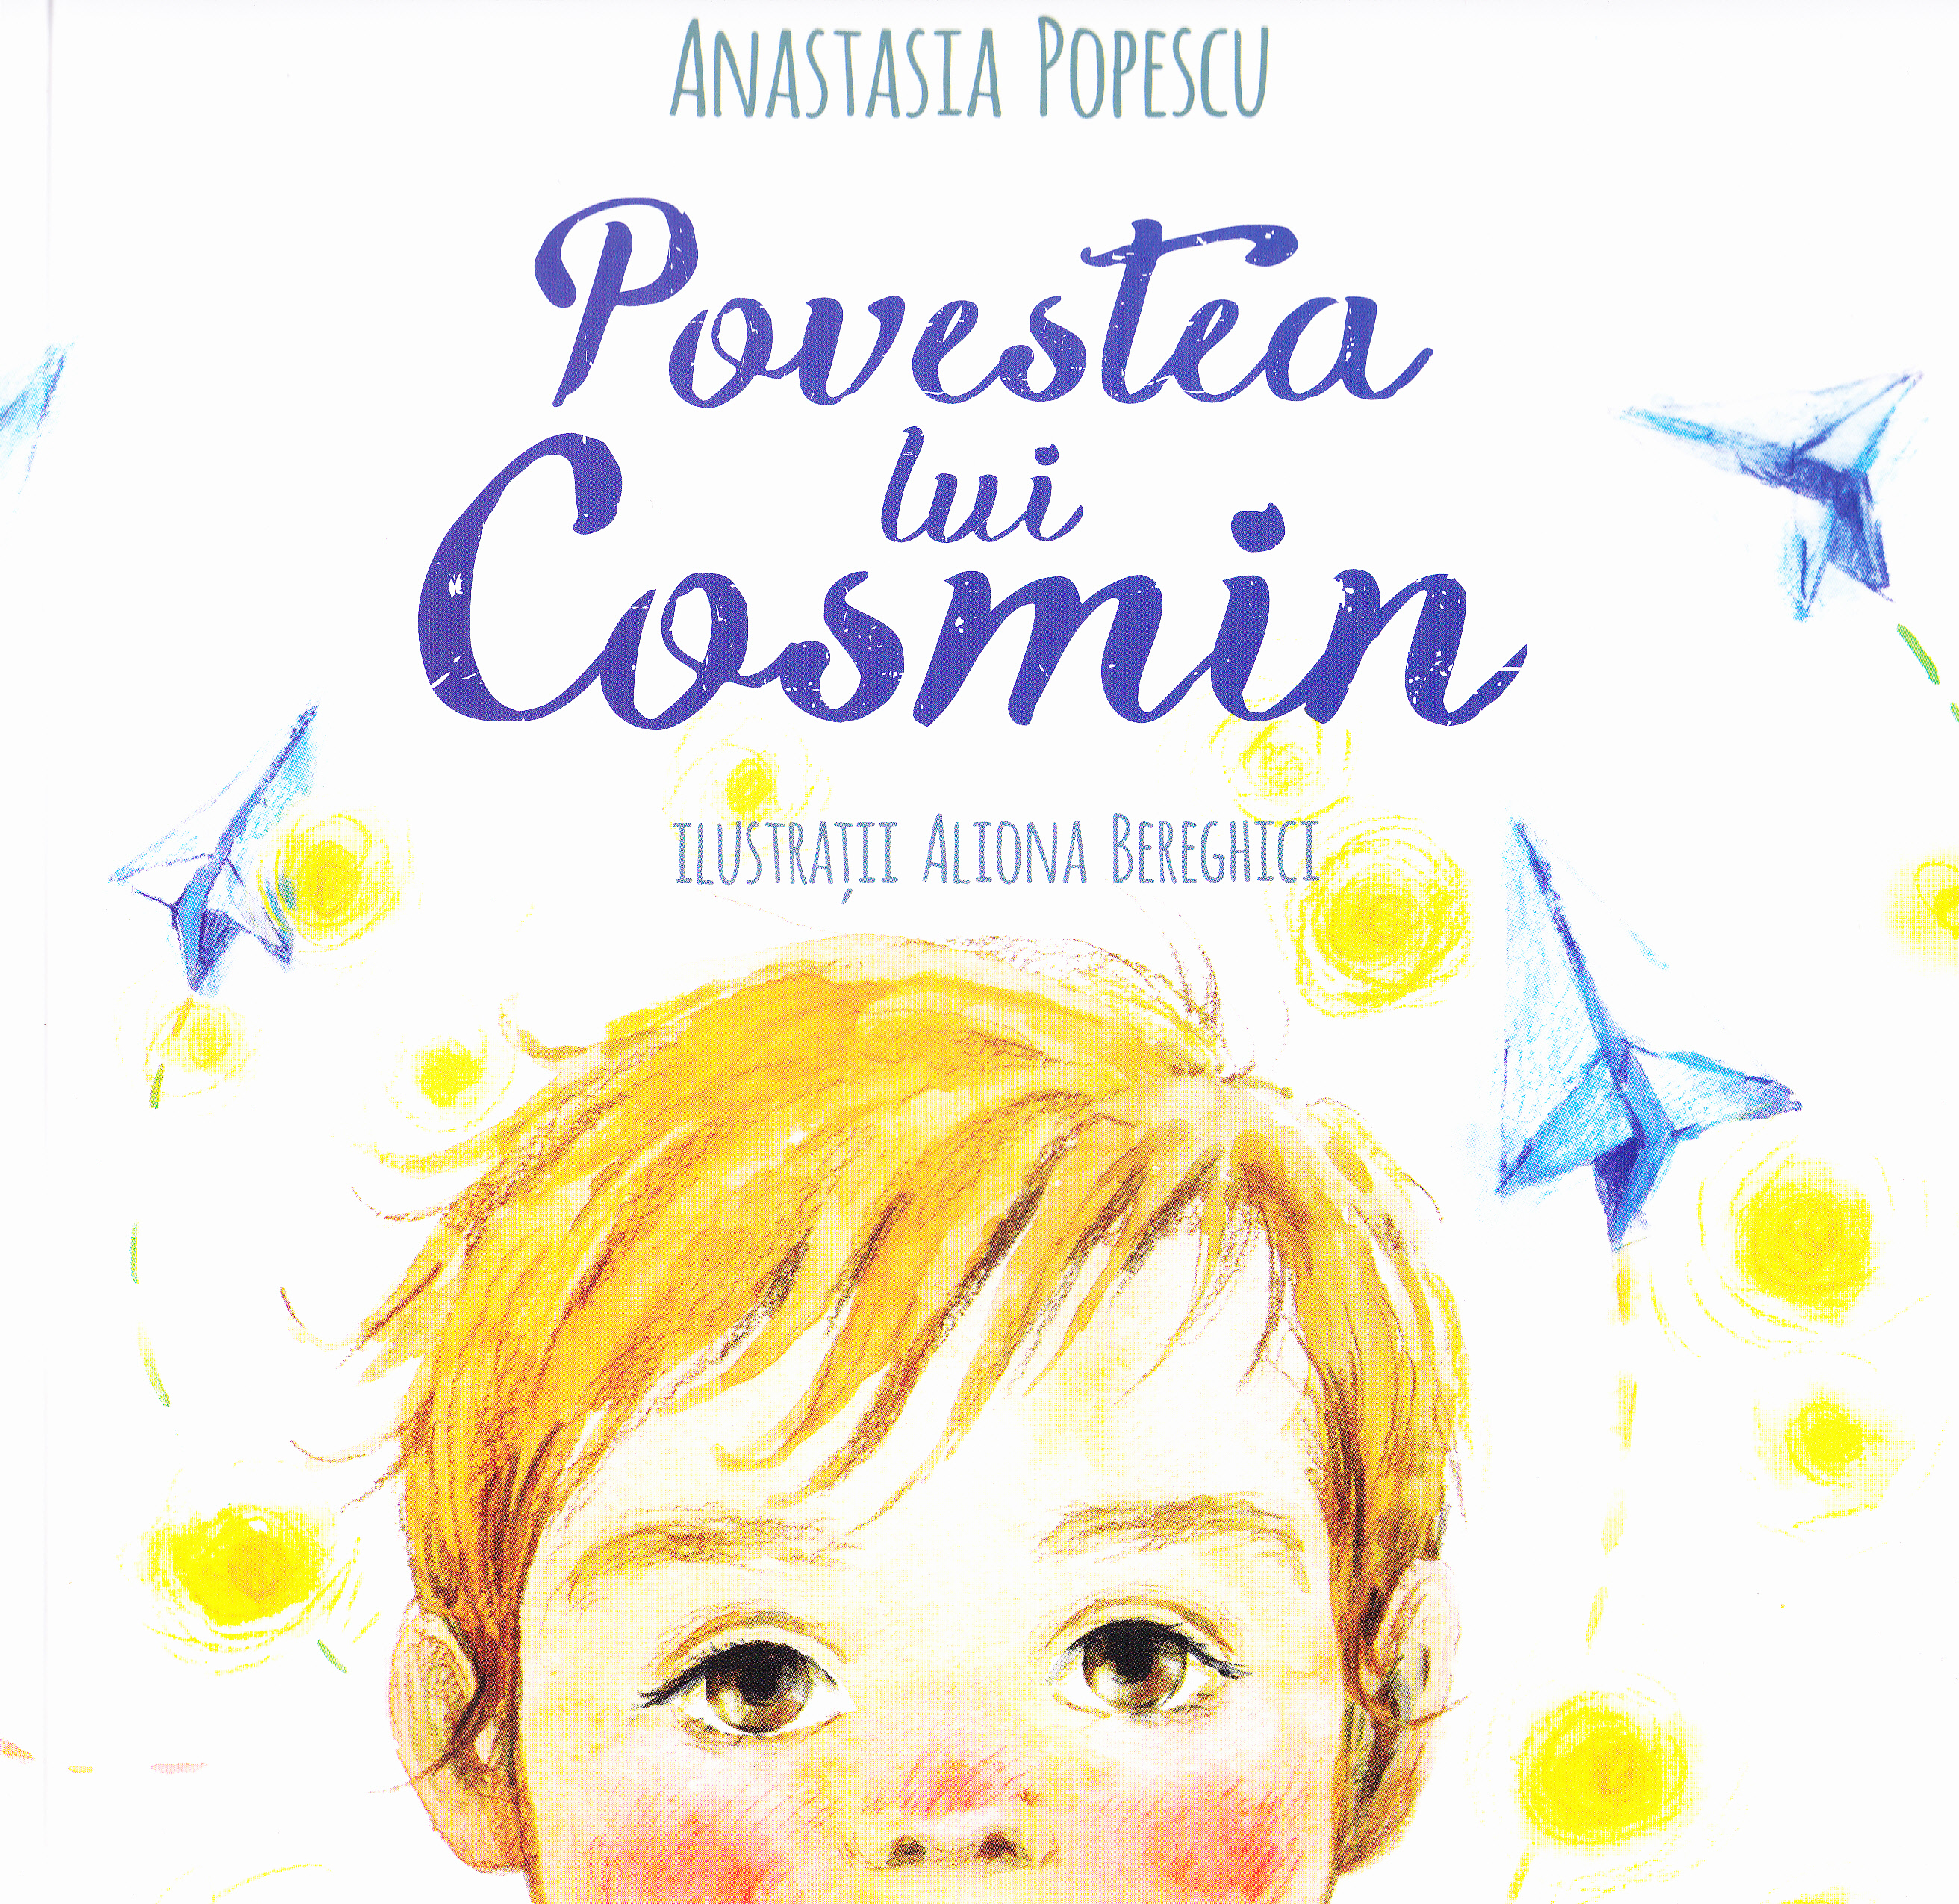 Povestea lui Cosmin - Anastasia Popescu